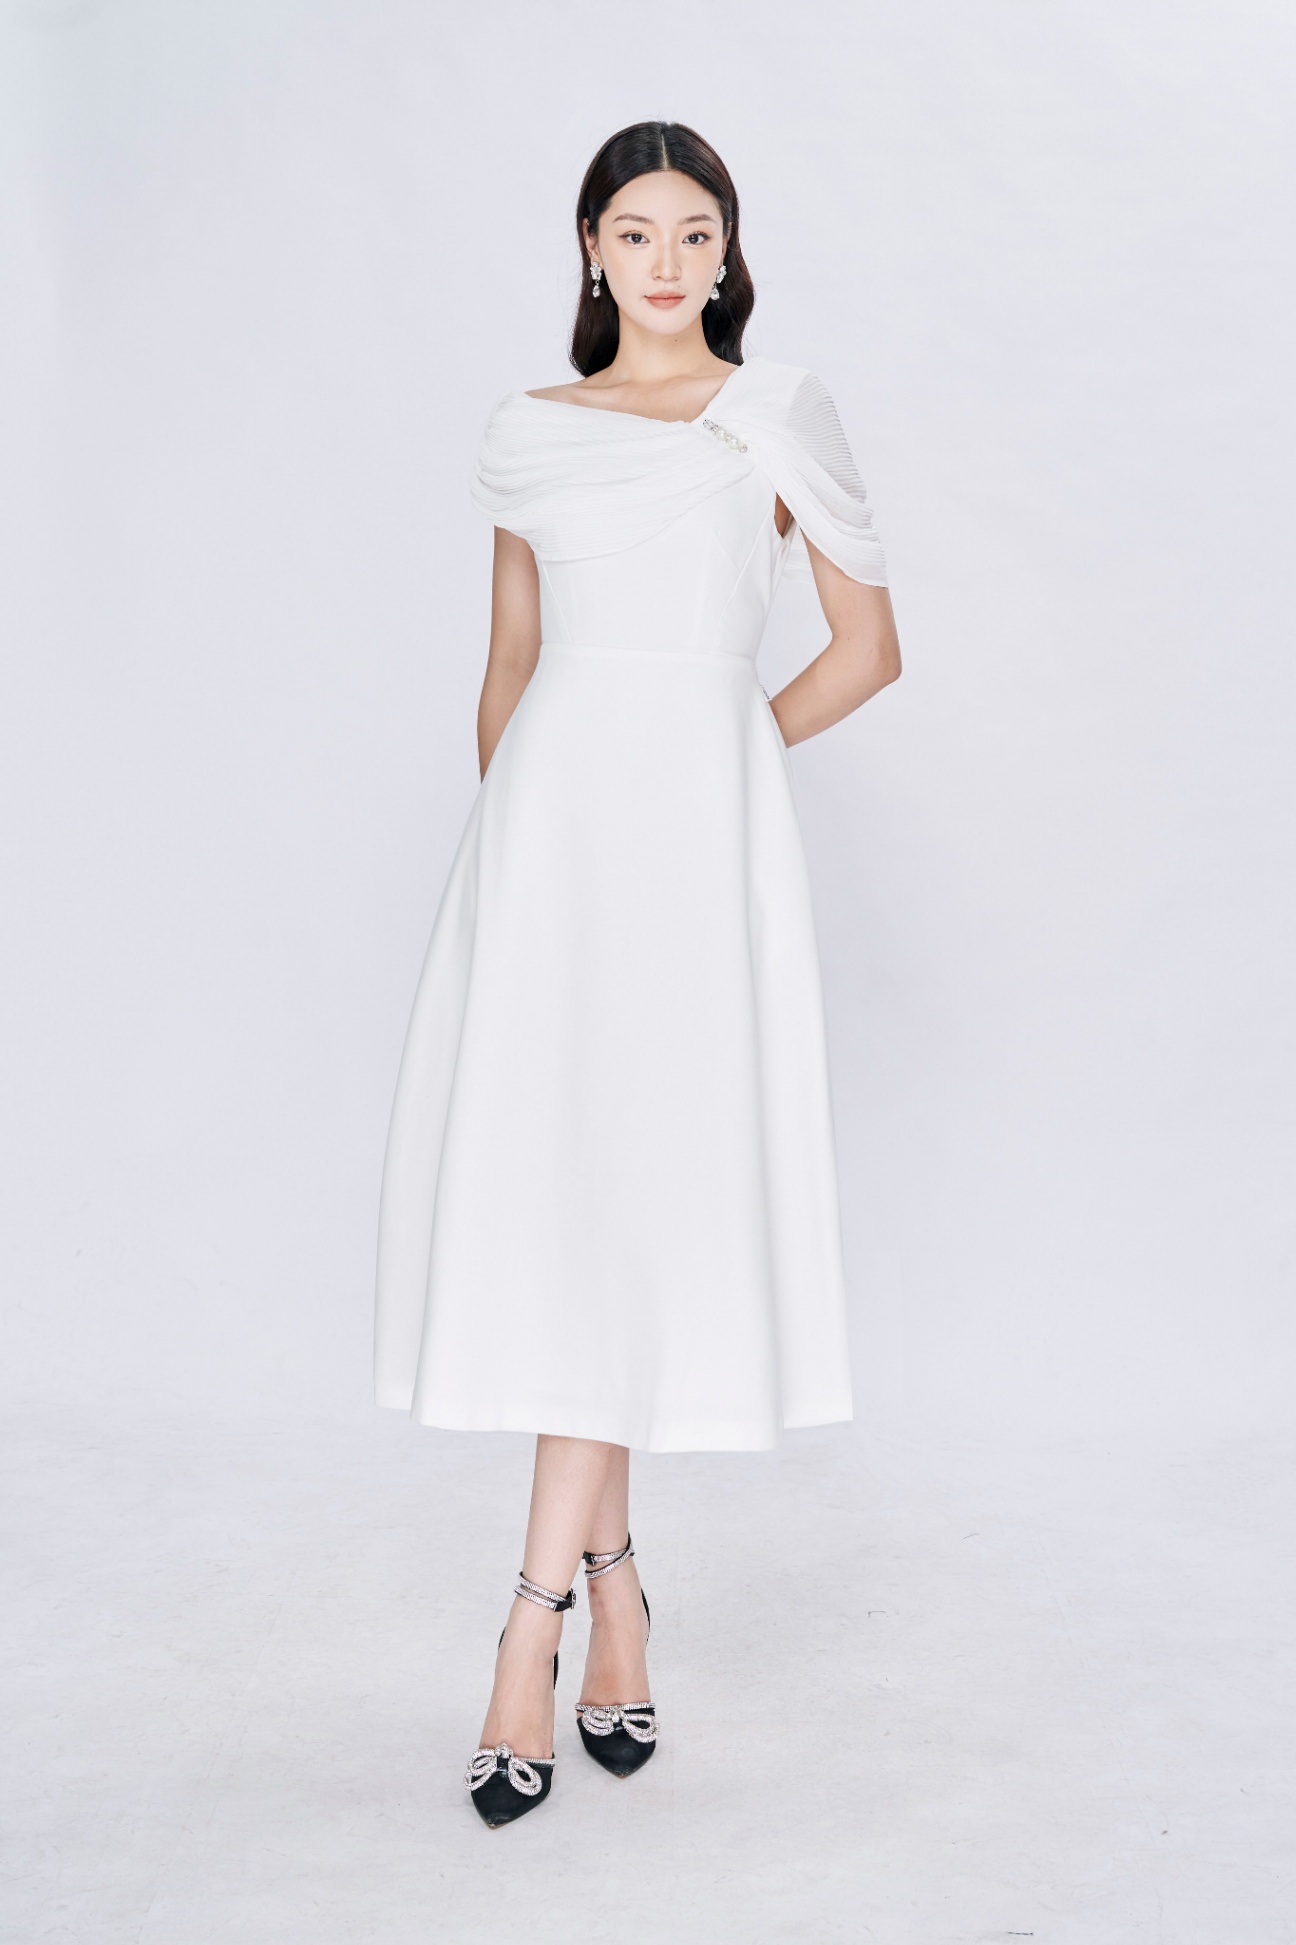 Bán Sỉ Đầm lụa lệch vai 2 màu đen trắng thiết kế | Shopee Việt Nam